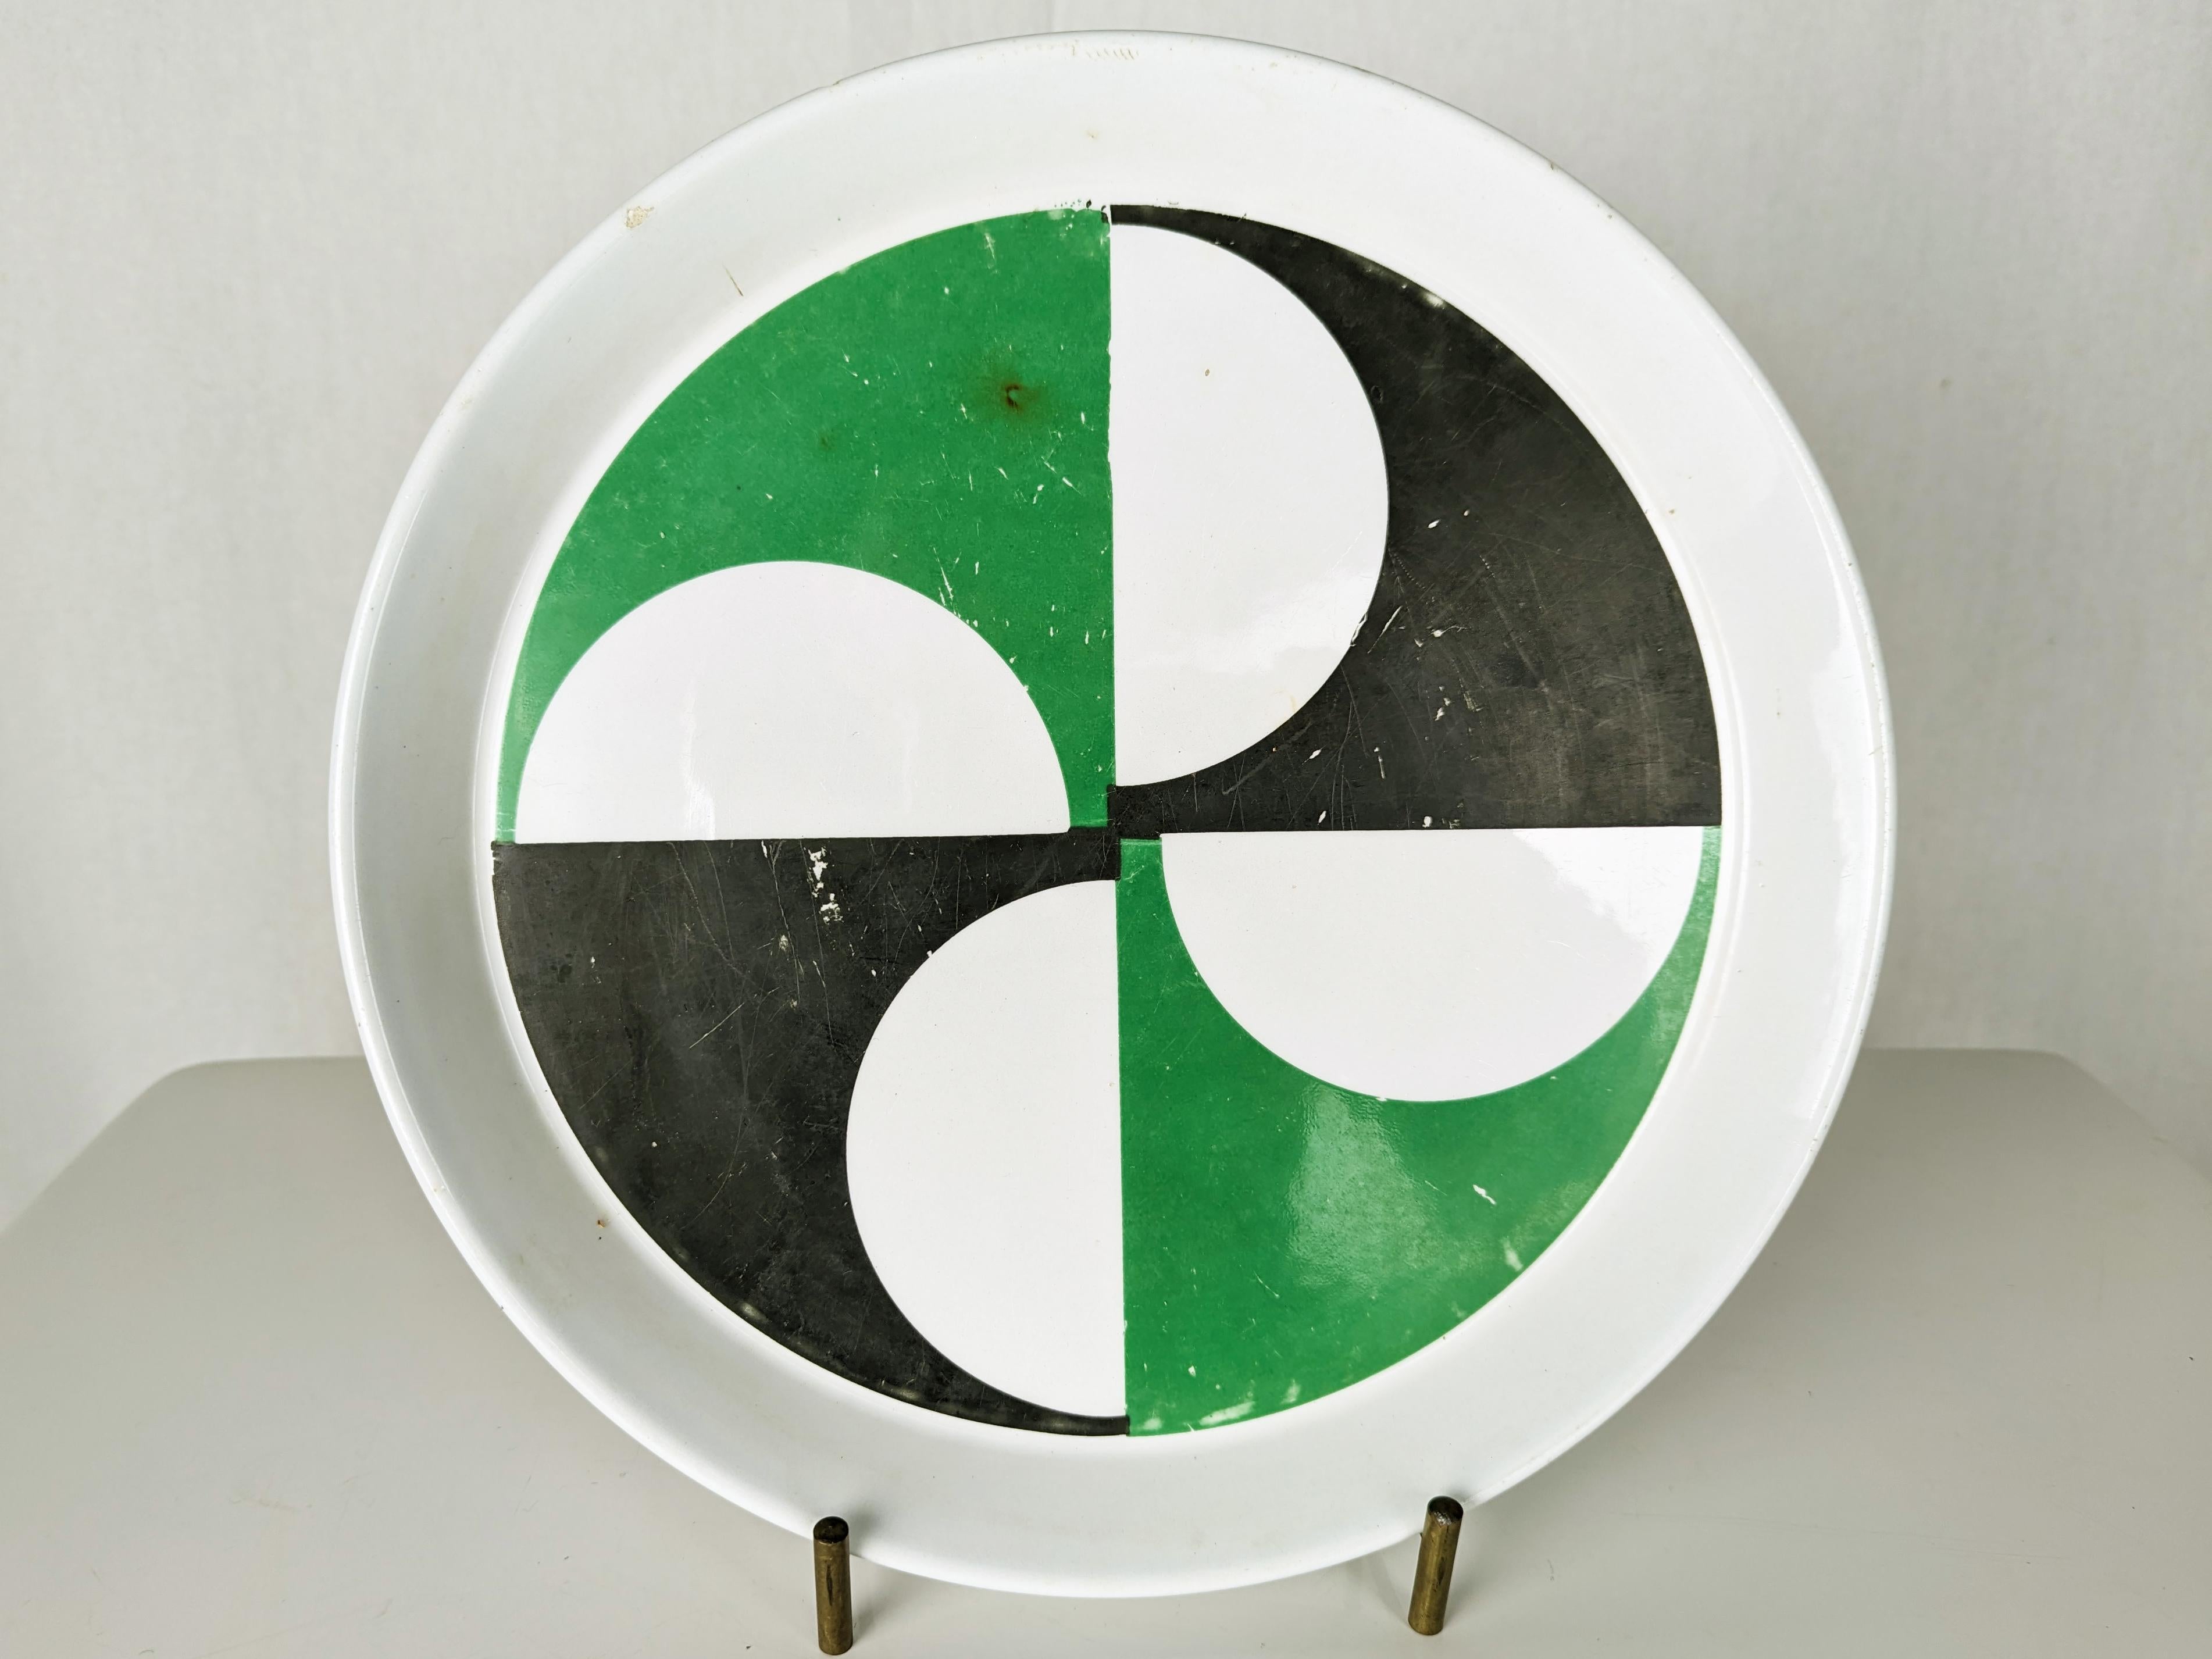 Satz von 2 dekorativen Tellern, entworfen von Gio Ponti für Ceramica Franco Pozzi.
Ordentlicher Zustand: sichtbare Gebrauchsspuren, Verfärbungen und einige Abplatzungen. Eine Restaurierung wird empfohlen.
Auf jeder Rückseite ist ein Label-Maker